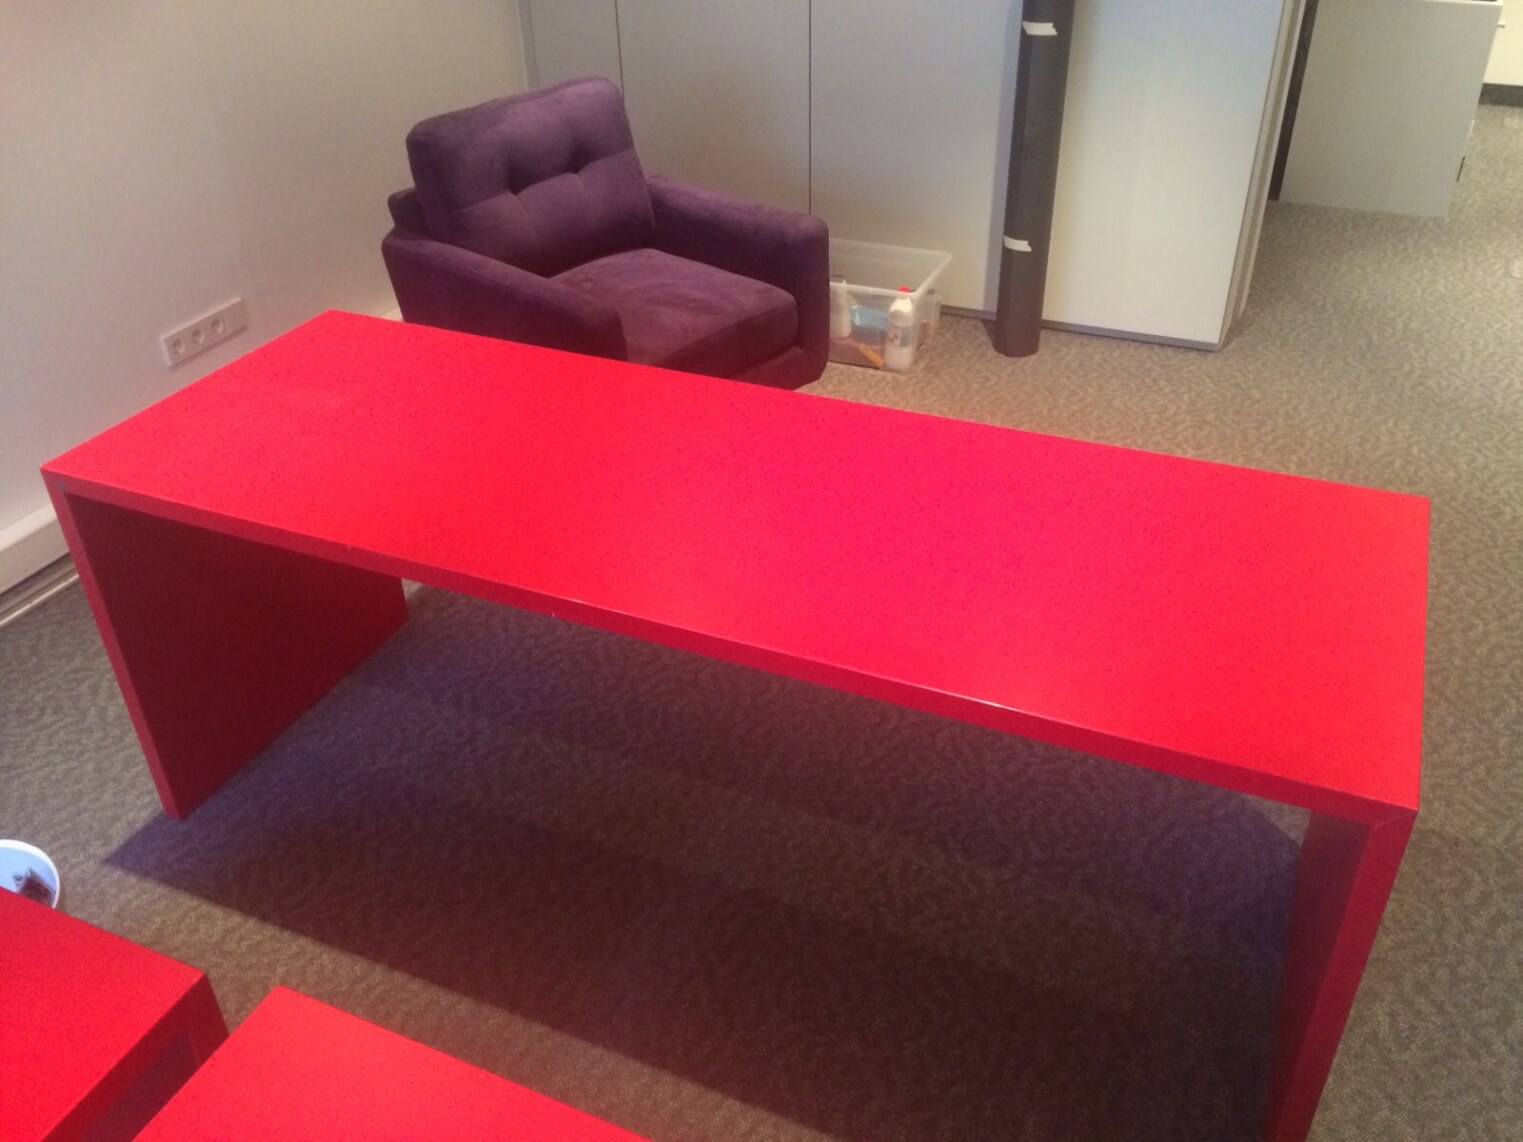 Büro Schreibtisch Folieren mit Selbstklebefolie von Rot zu Dunkelgrau Anthrazit 01